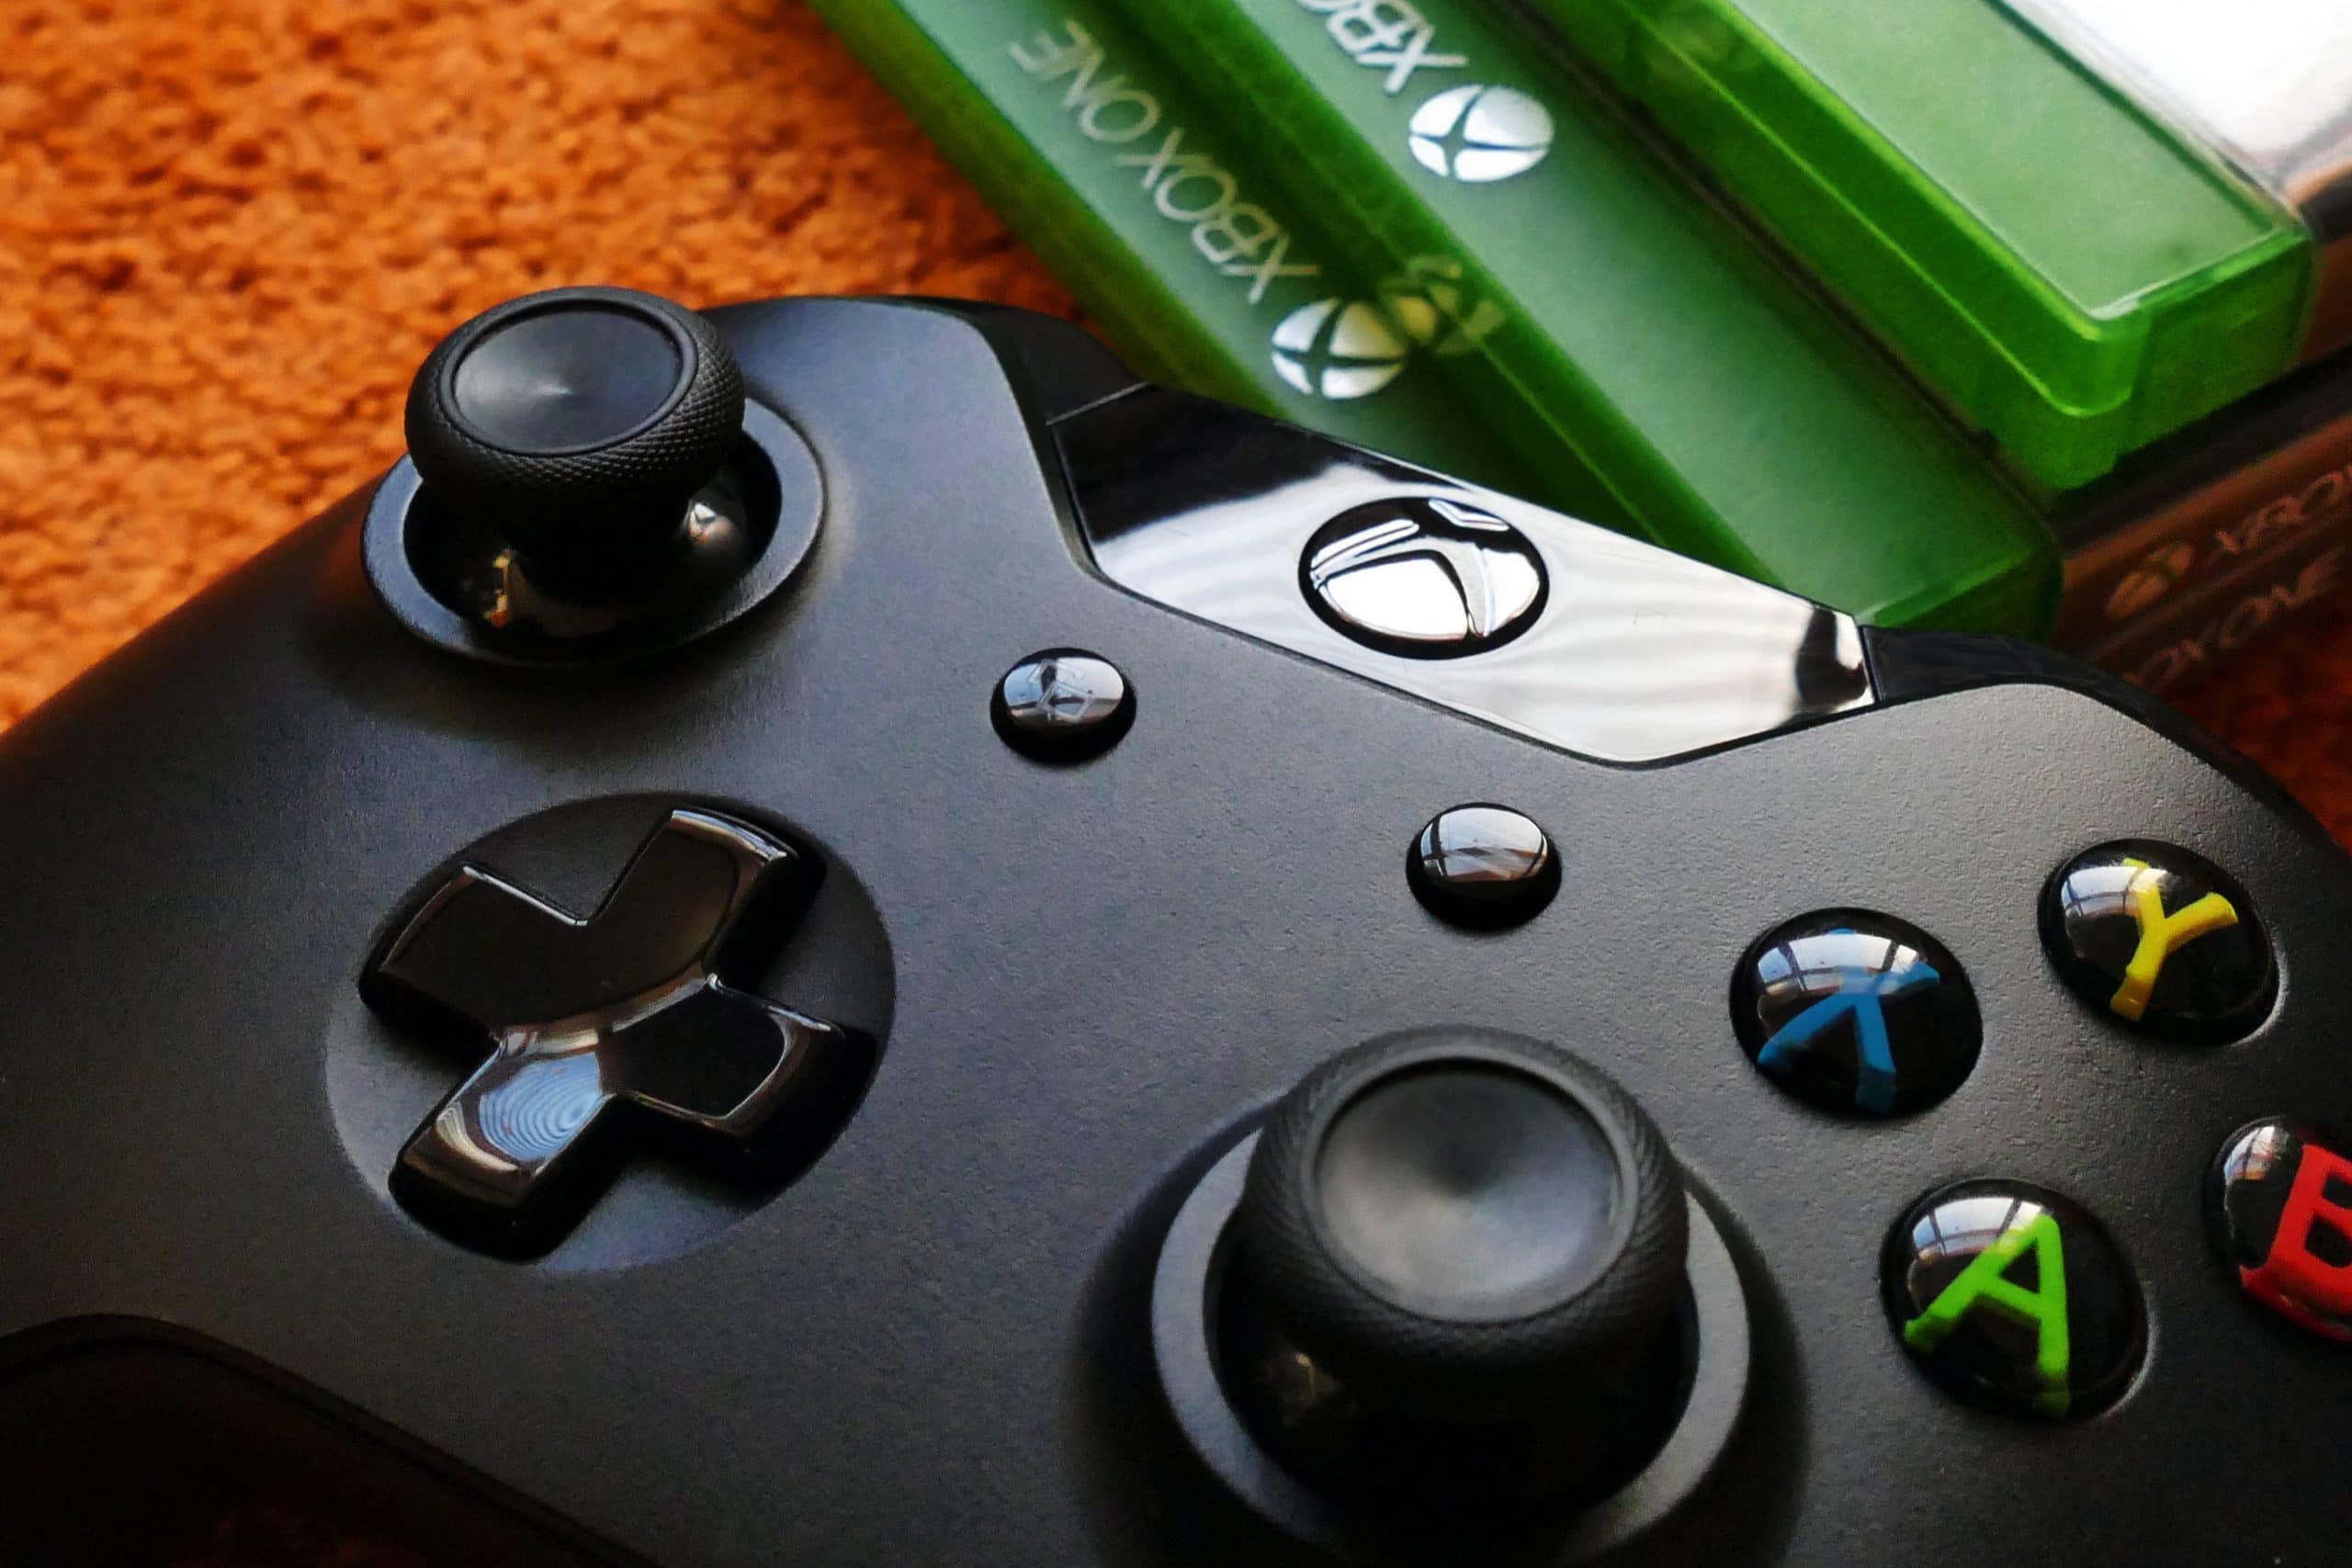 Darmowe gry na Xbox — zobacz najciekawsze tytuły